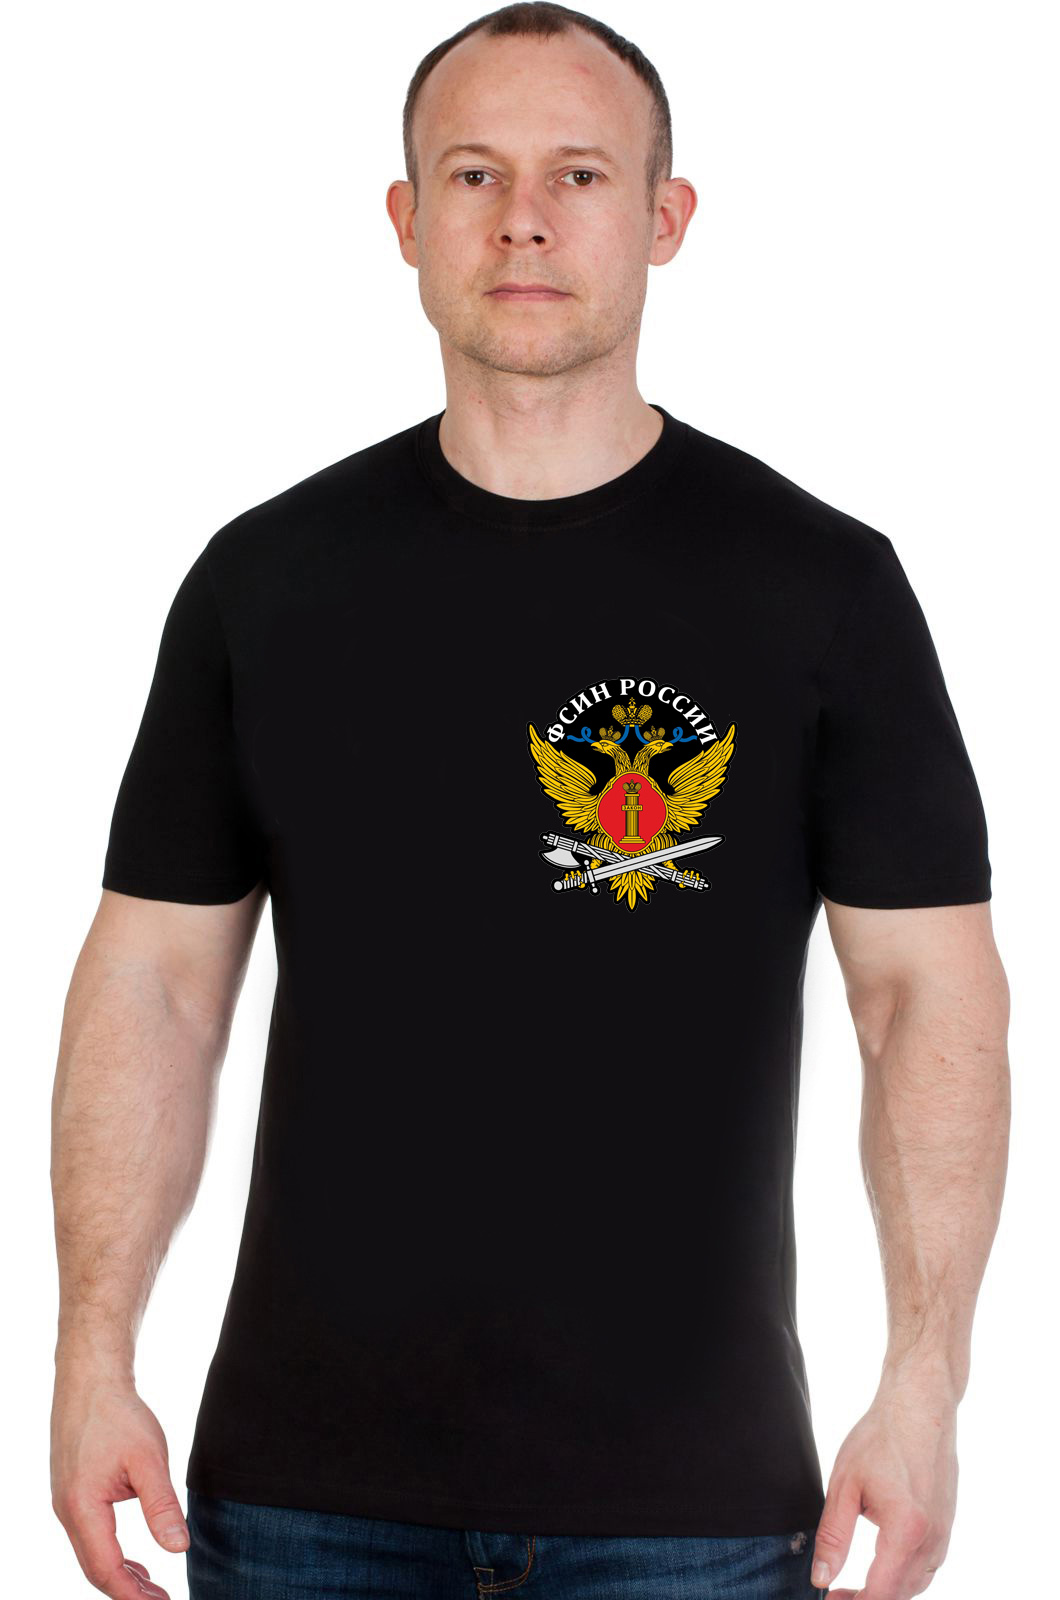 Мужская футболка с эмблемой ФСИН 